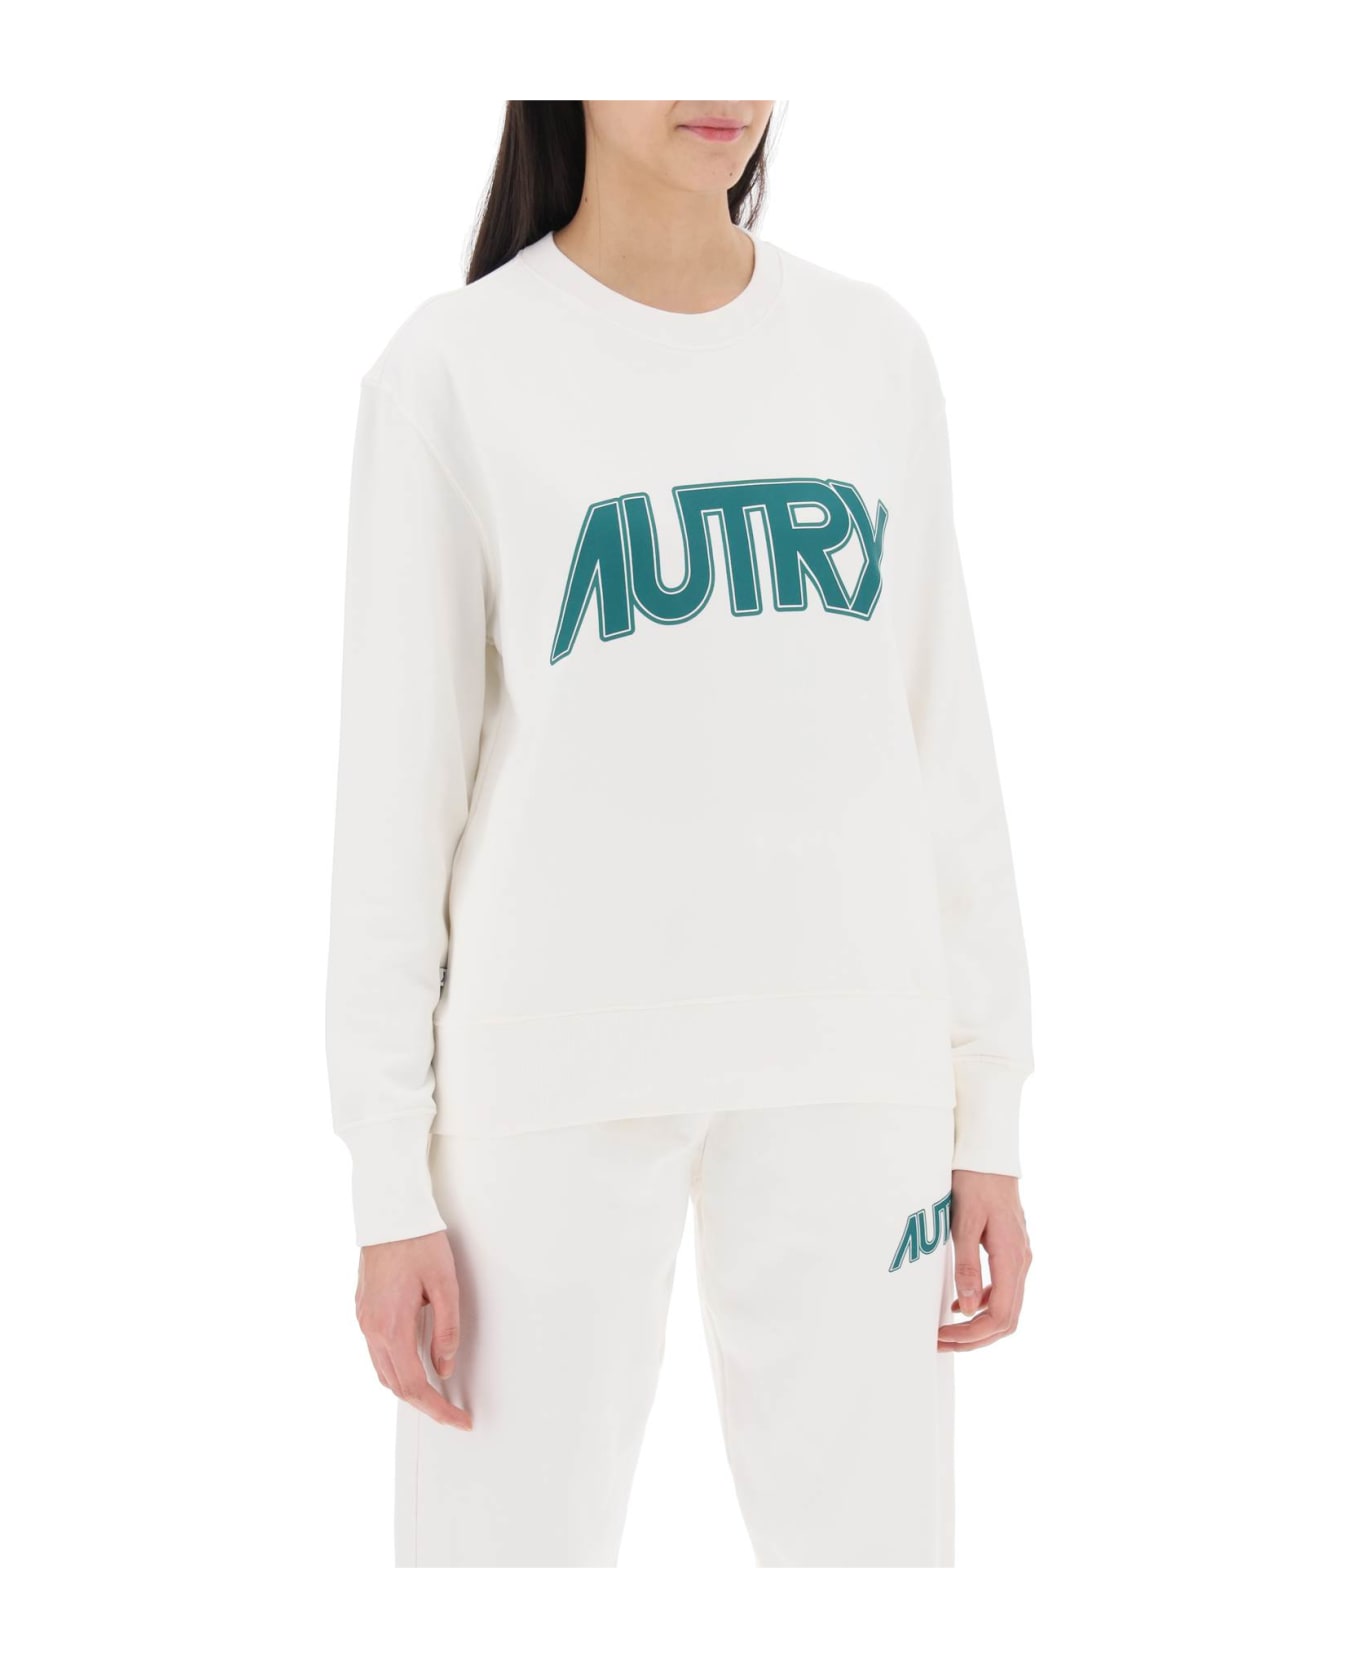 Autry Sweatshirt With Maxi Logo Print - White